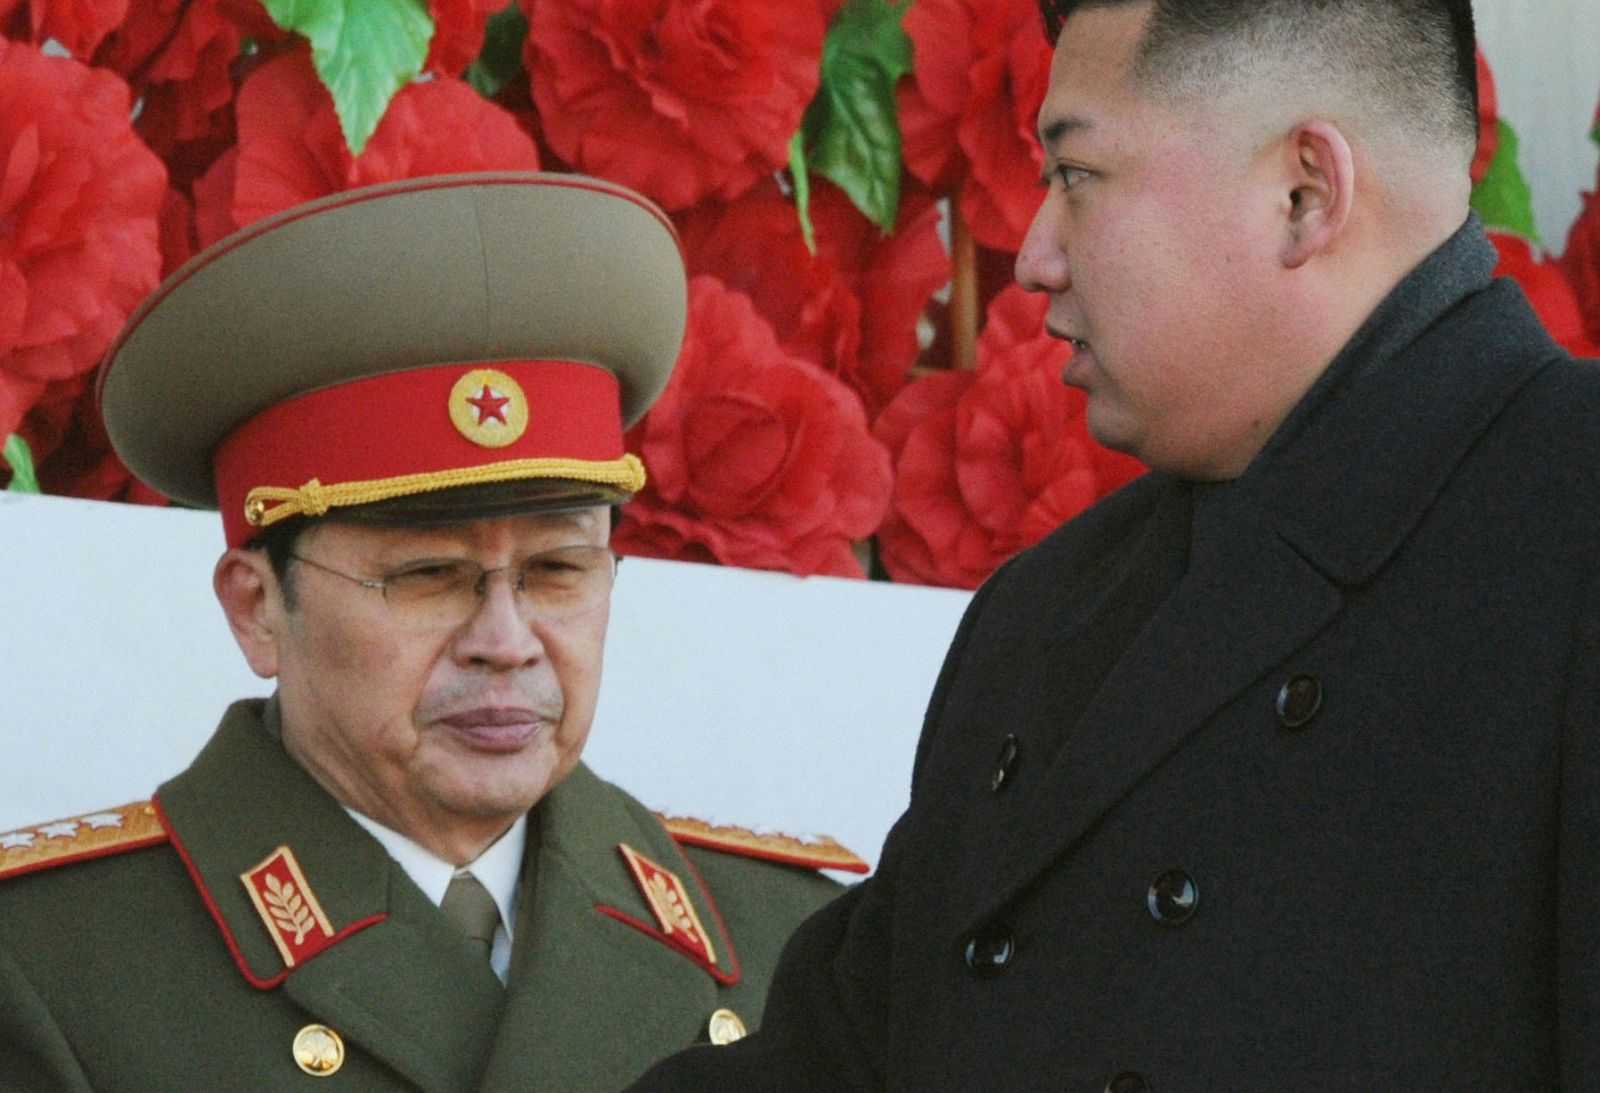 El líder norcoreano, Kim Jong un, pasa junto a su tío, Jang Song thaek, durante una parada militar en Pyongyang.